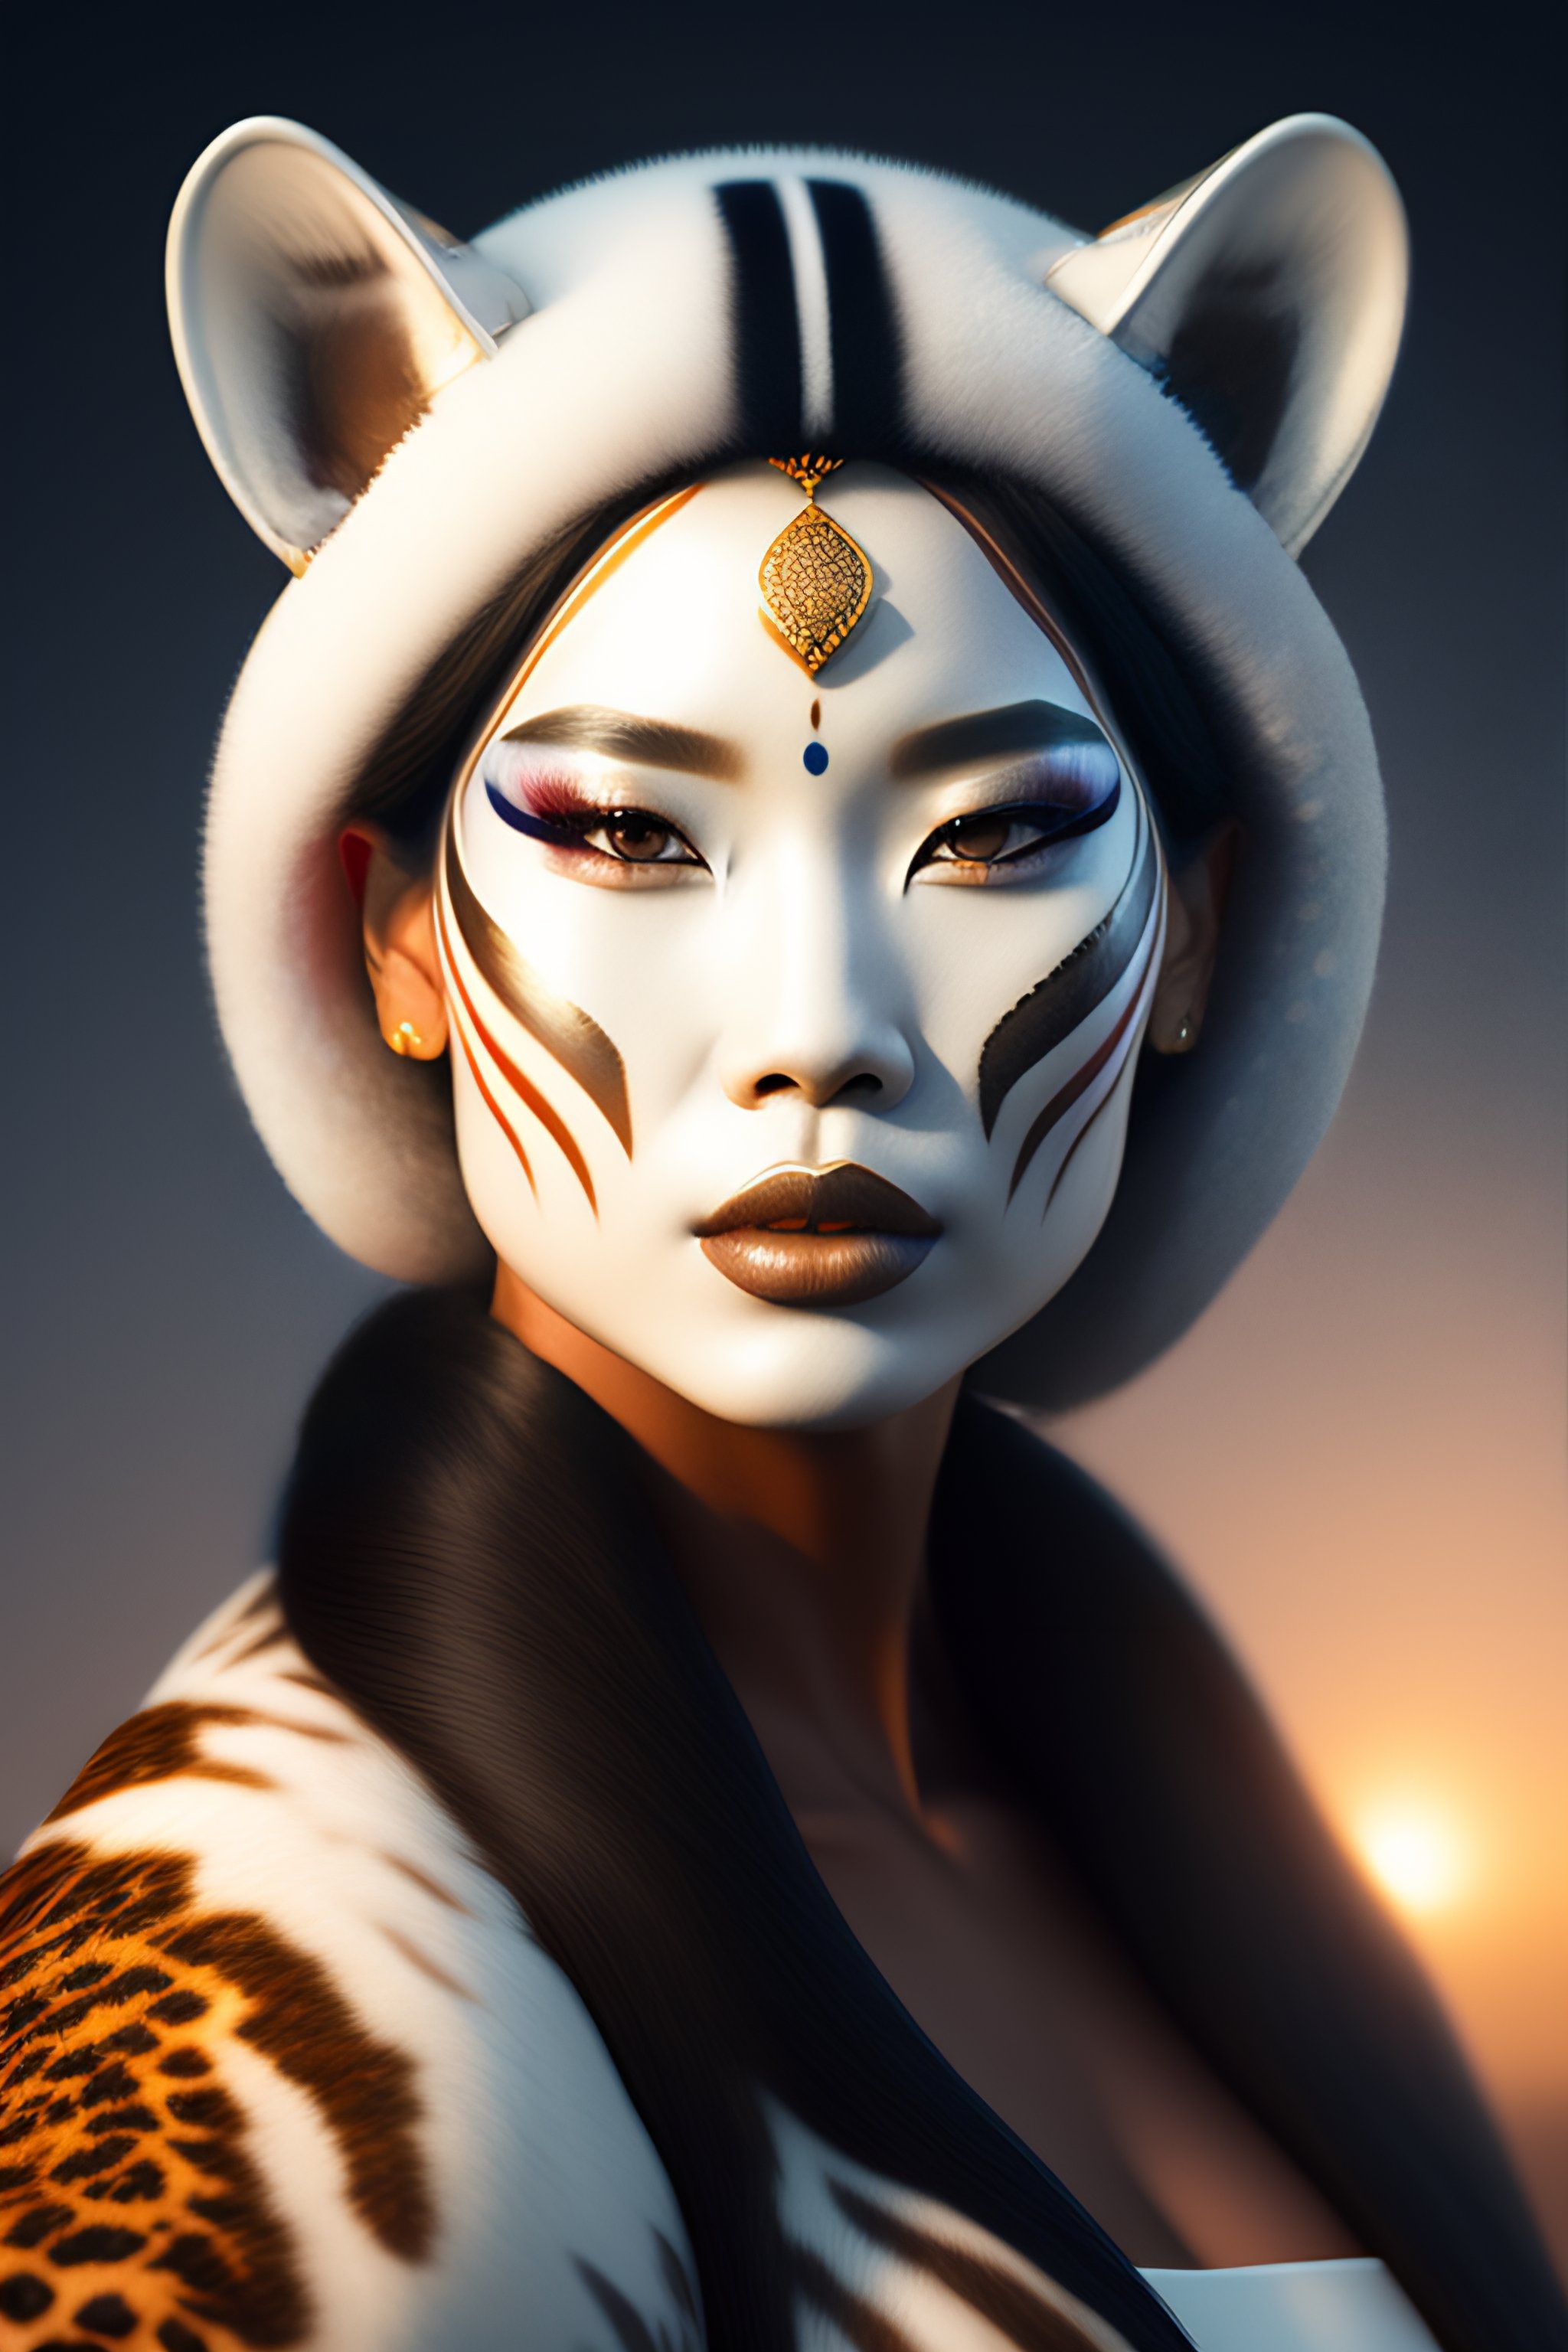 white tiger makeup